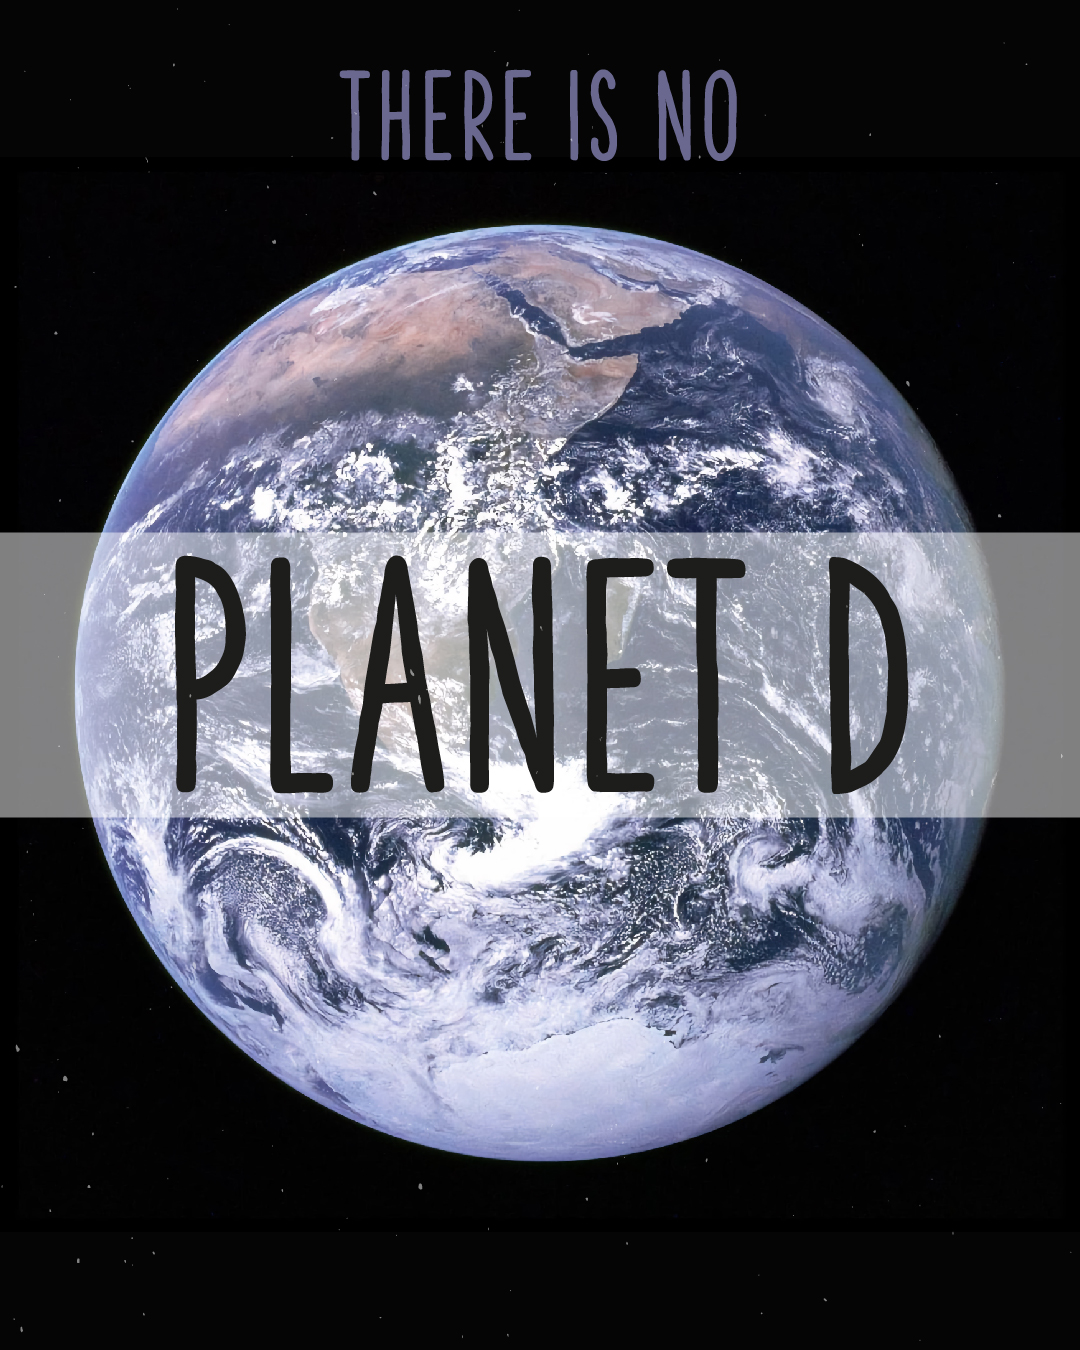 Erdkugel auf schwarzem Hintergrund. Text in der Mitte: Planet A